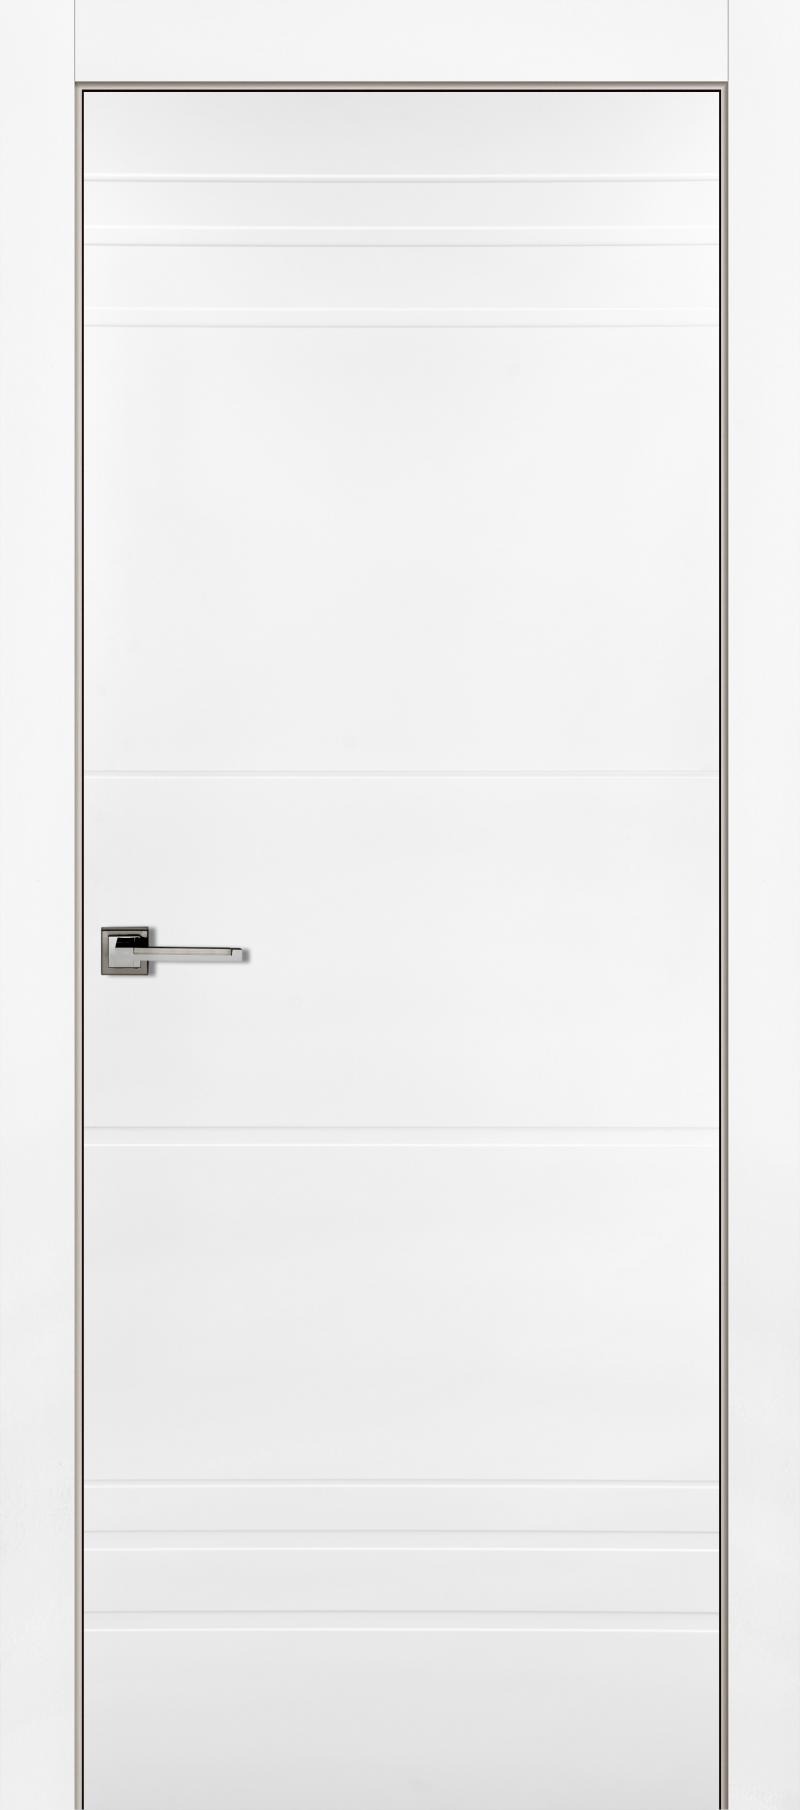 Дверь межкомнатная Рива глухая эмаль цвет белый 80x200 см (с замком)